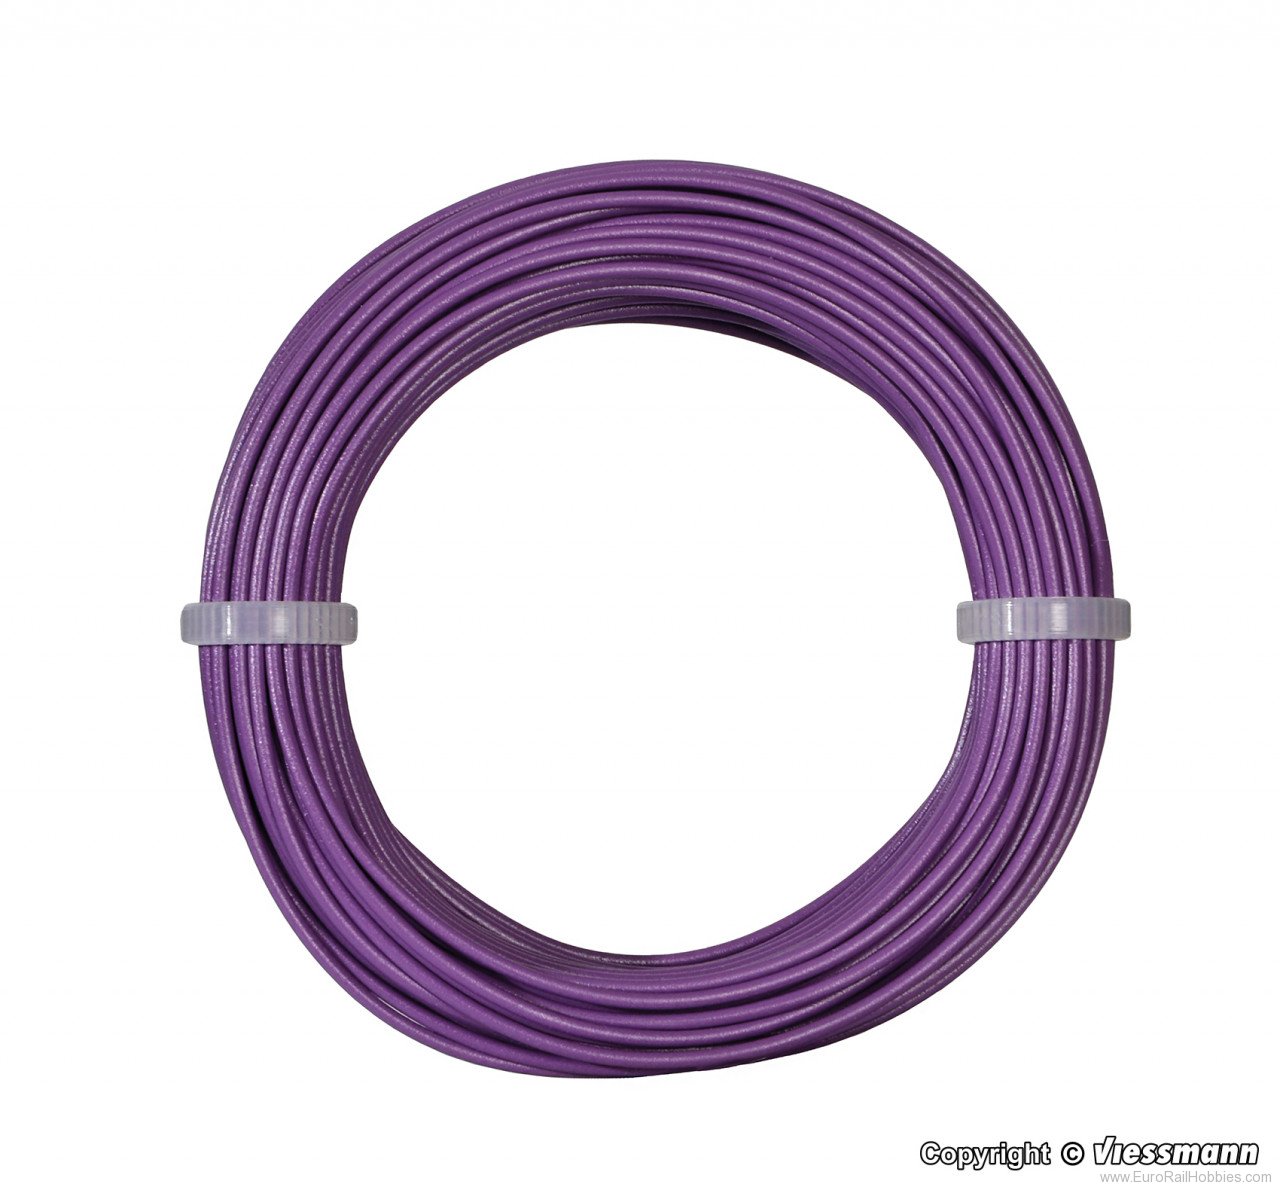 Viessmann 6867 Wire,0,14 mm dia., purple, 10 m